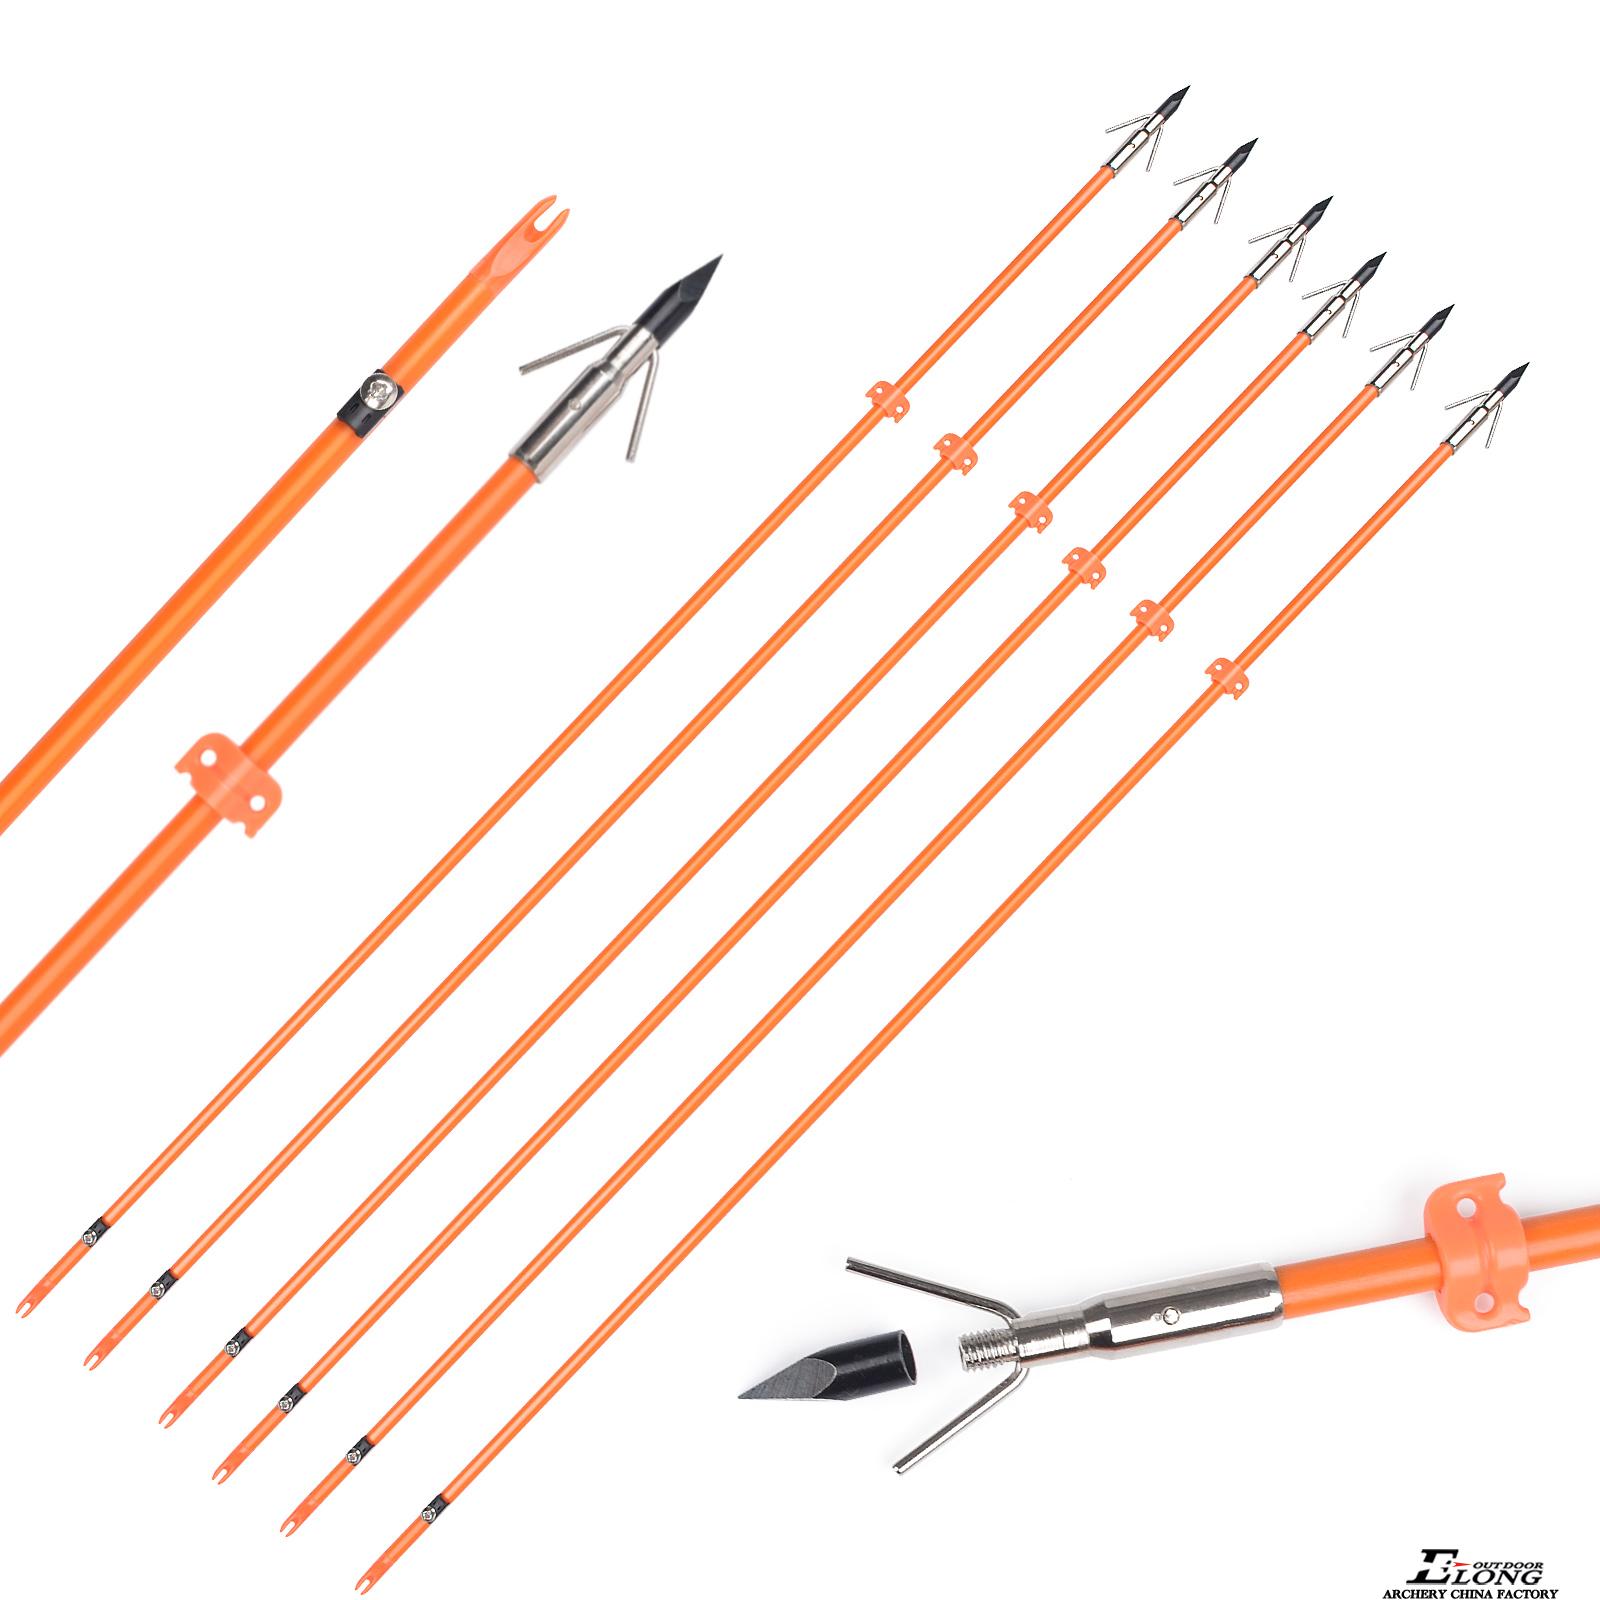 Elong Outdoor OD8mm 32inch Bowfishing Arrow Fiberglass Shaft Archery Fishing Using